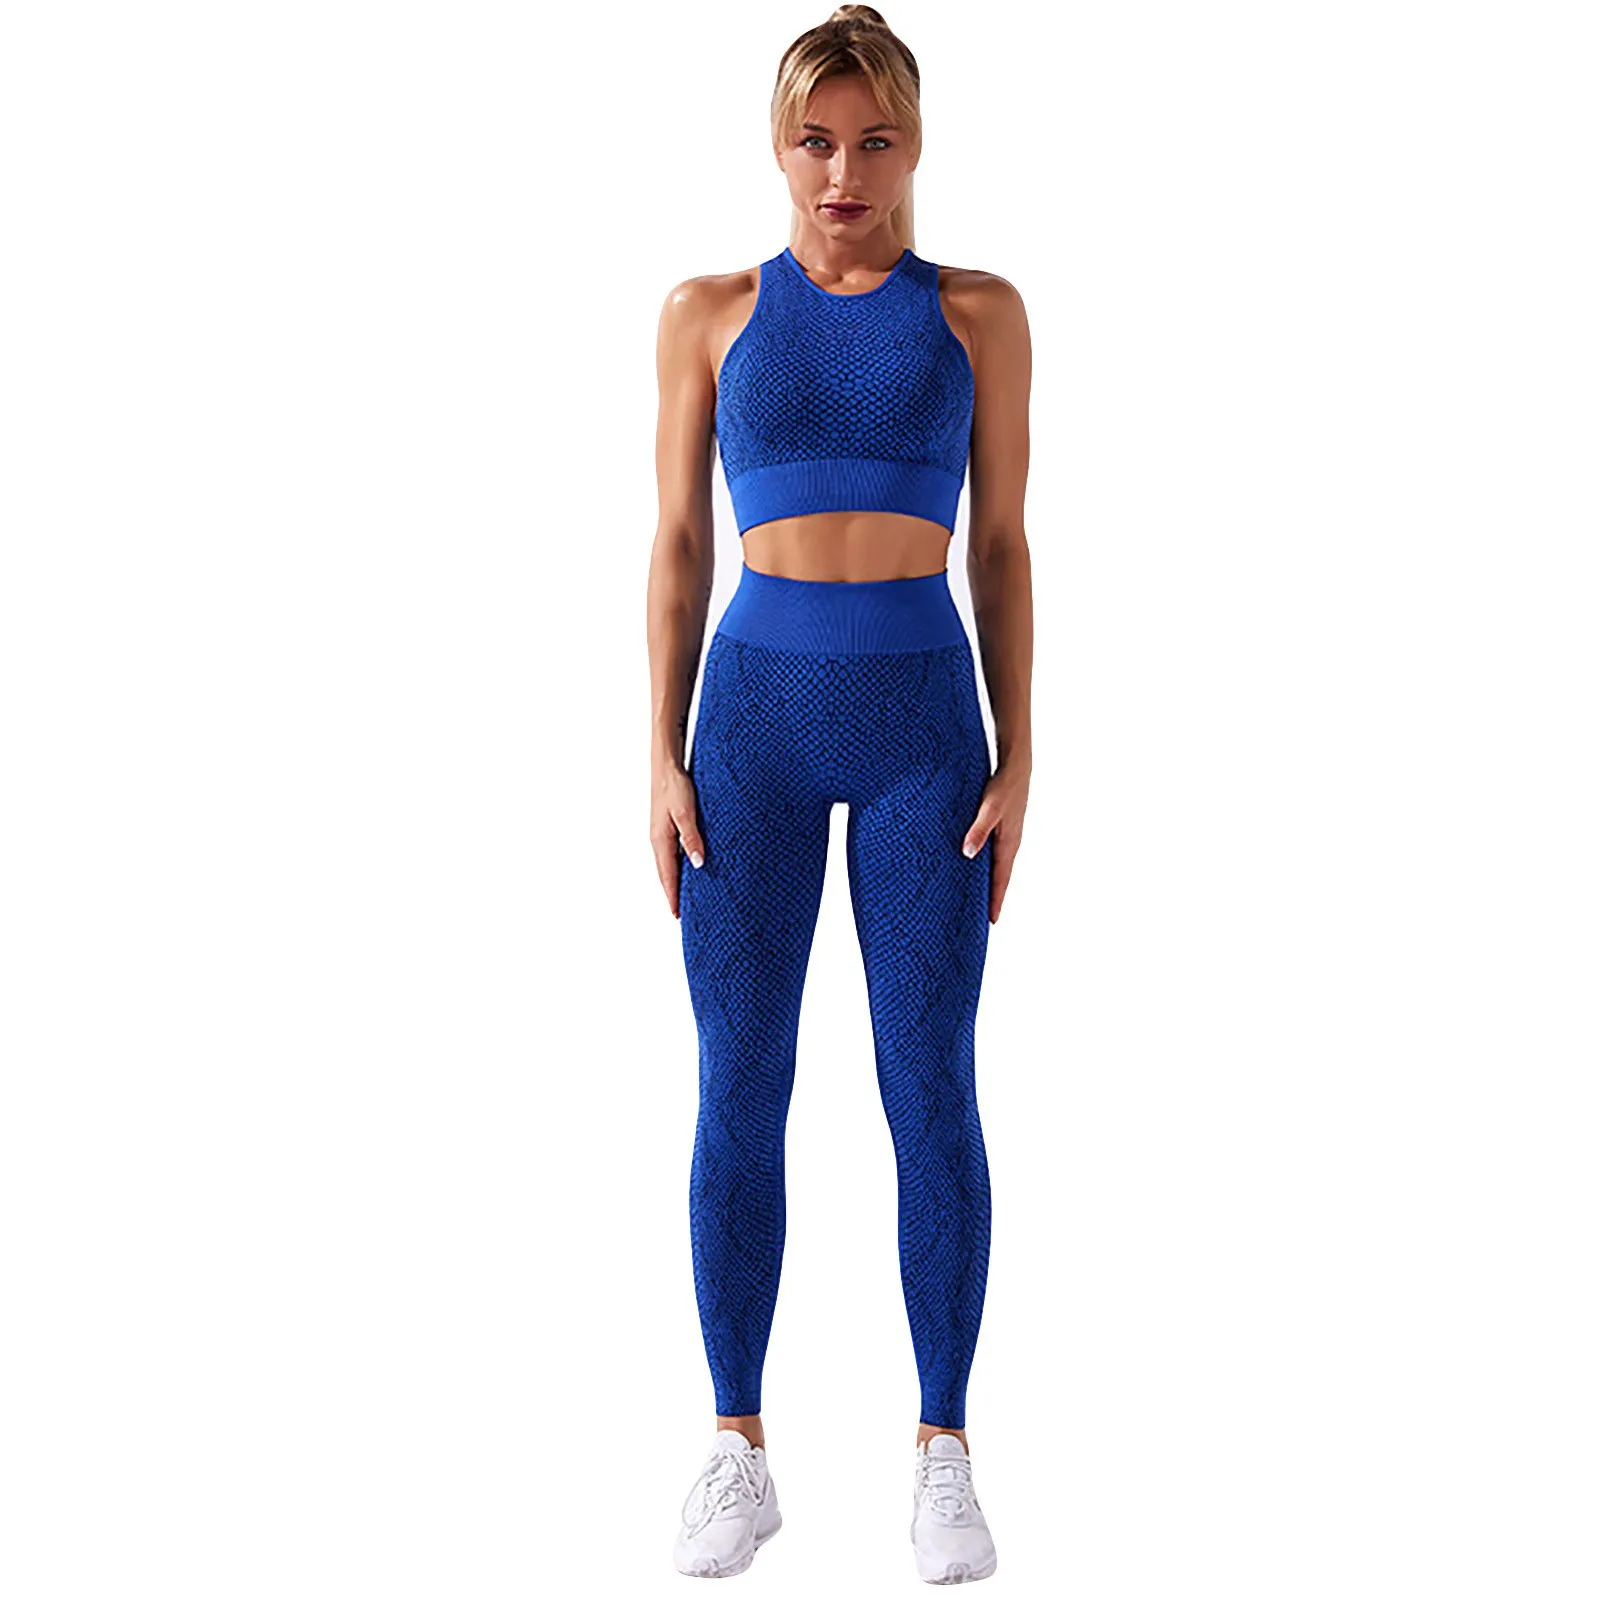 GRT Fitness Hf2c49fa4ef3045749e256506c68d2607D Seamless Women Yoga Set Workout Shirts Sport Pants Gym Clothing Short Crop Top High Waist Running Leggings Sports Set 2021 